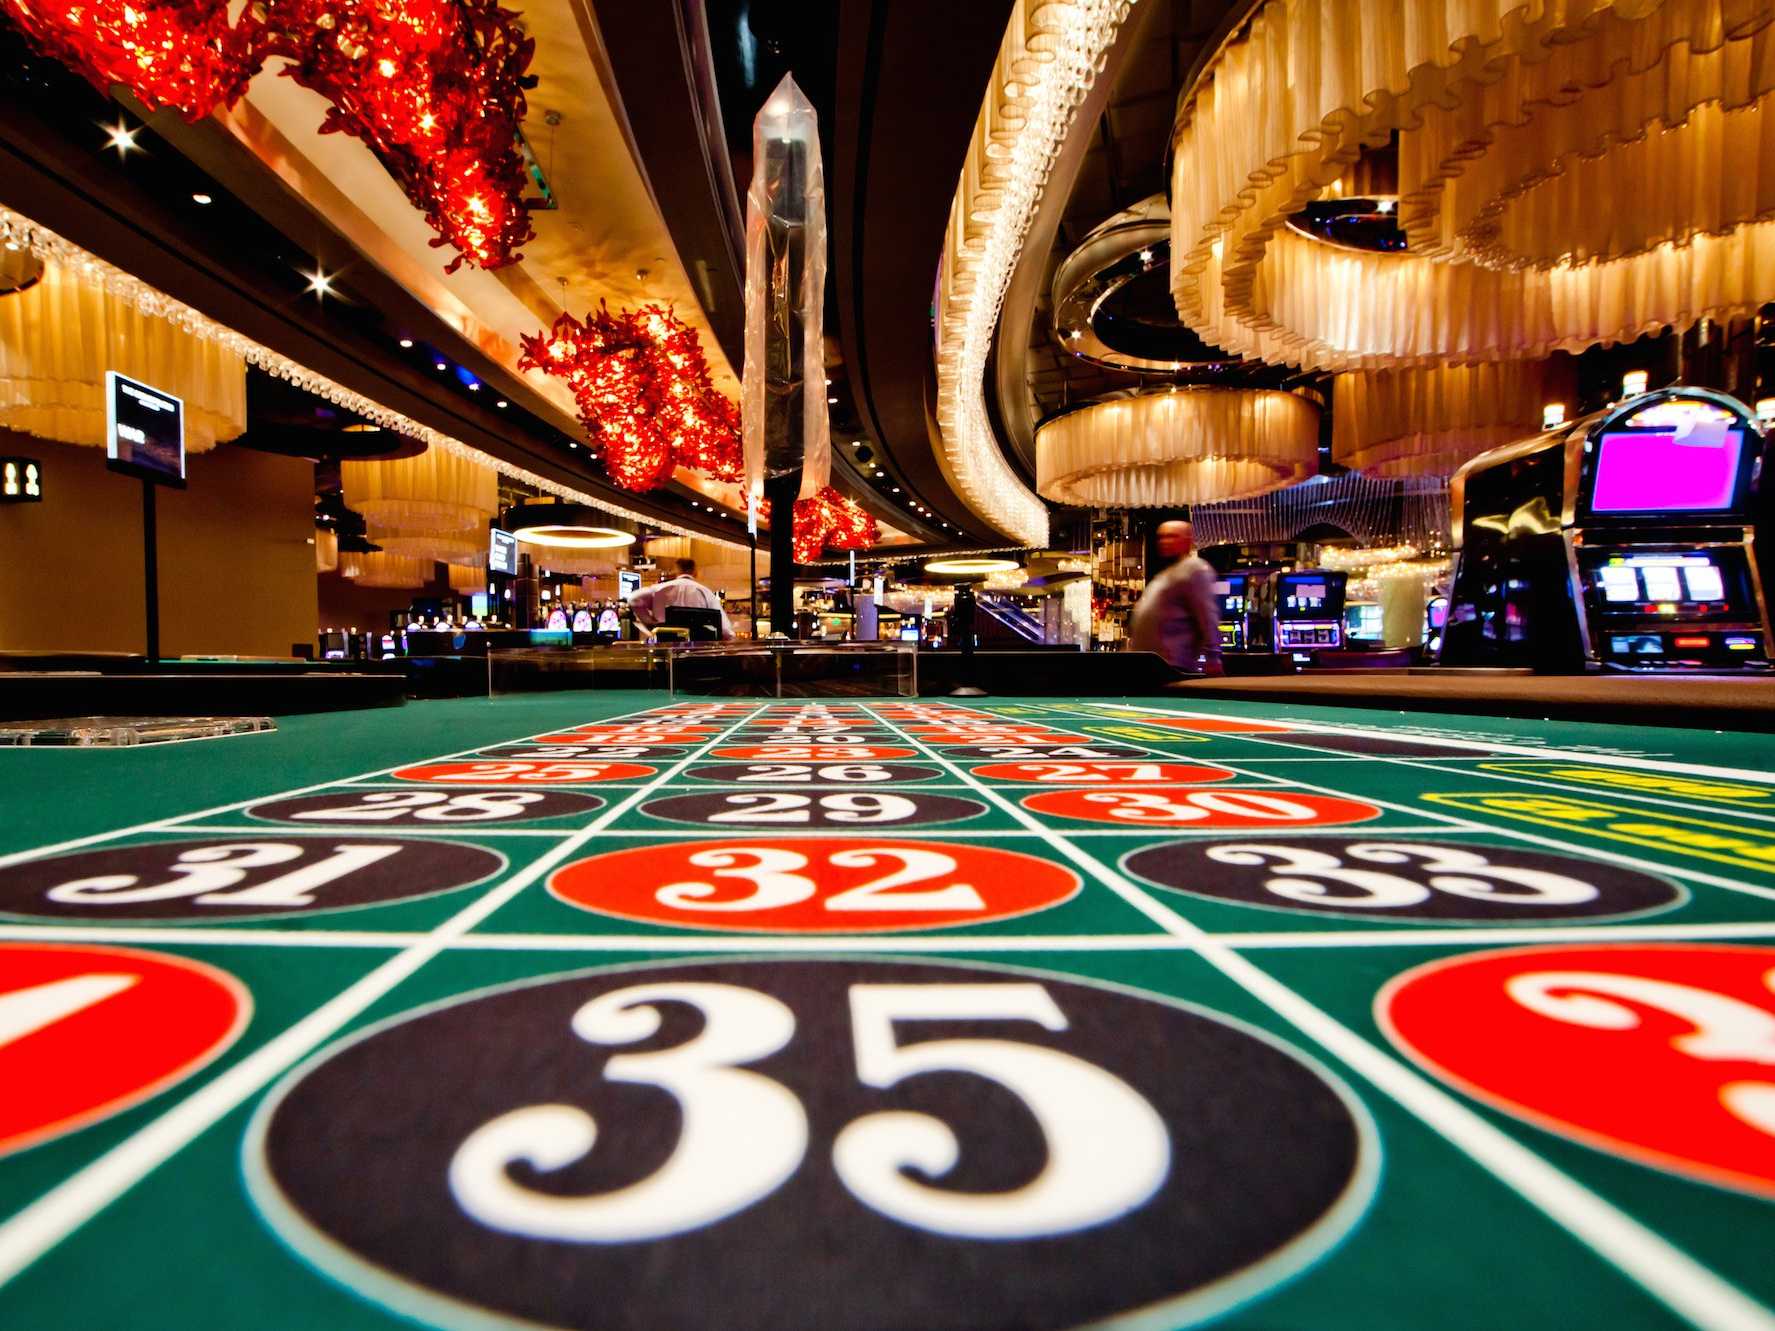 Jeux casino : laissez-vous guider